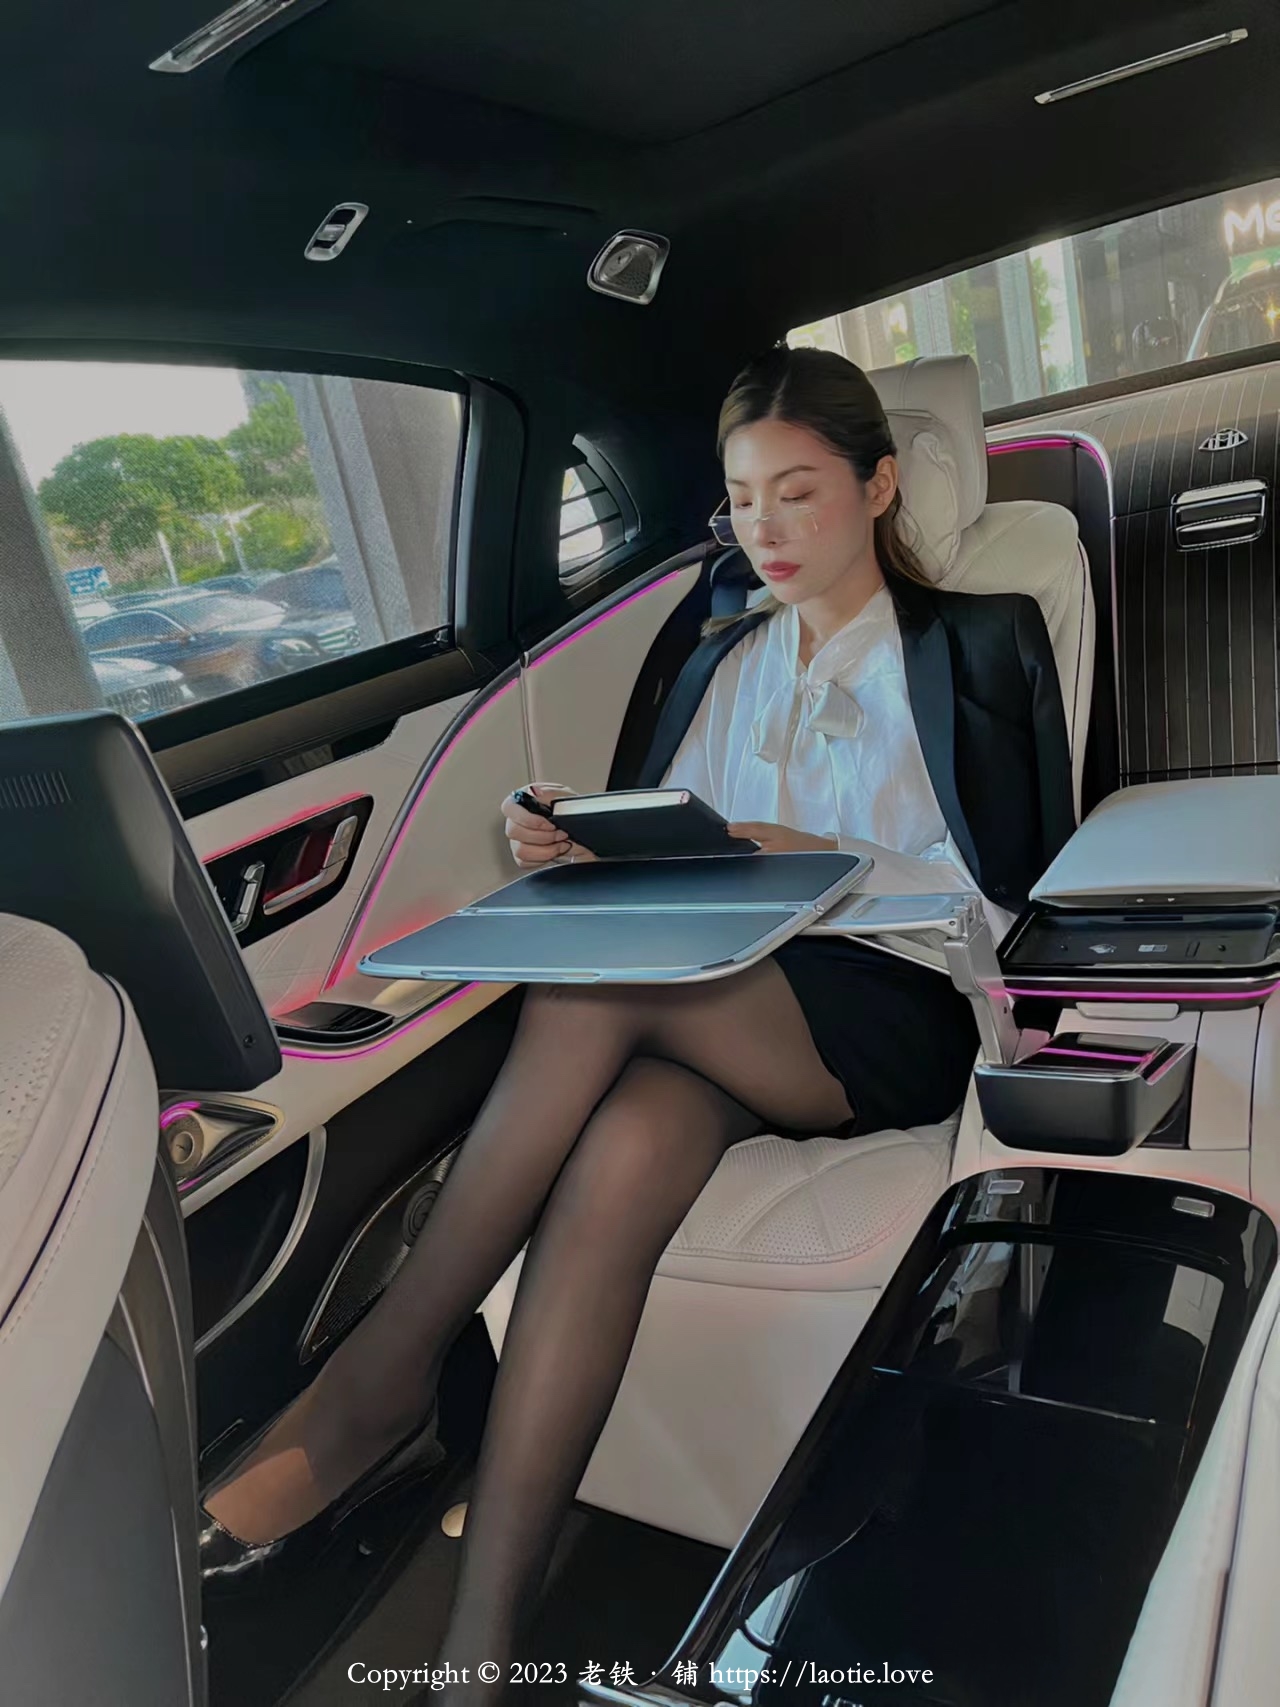 豪华私家车里穿黑丝的大长腿OL美少妇在办公